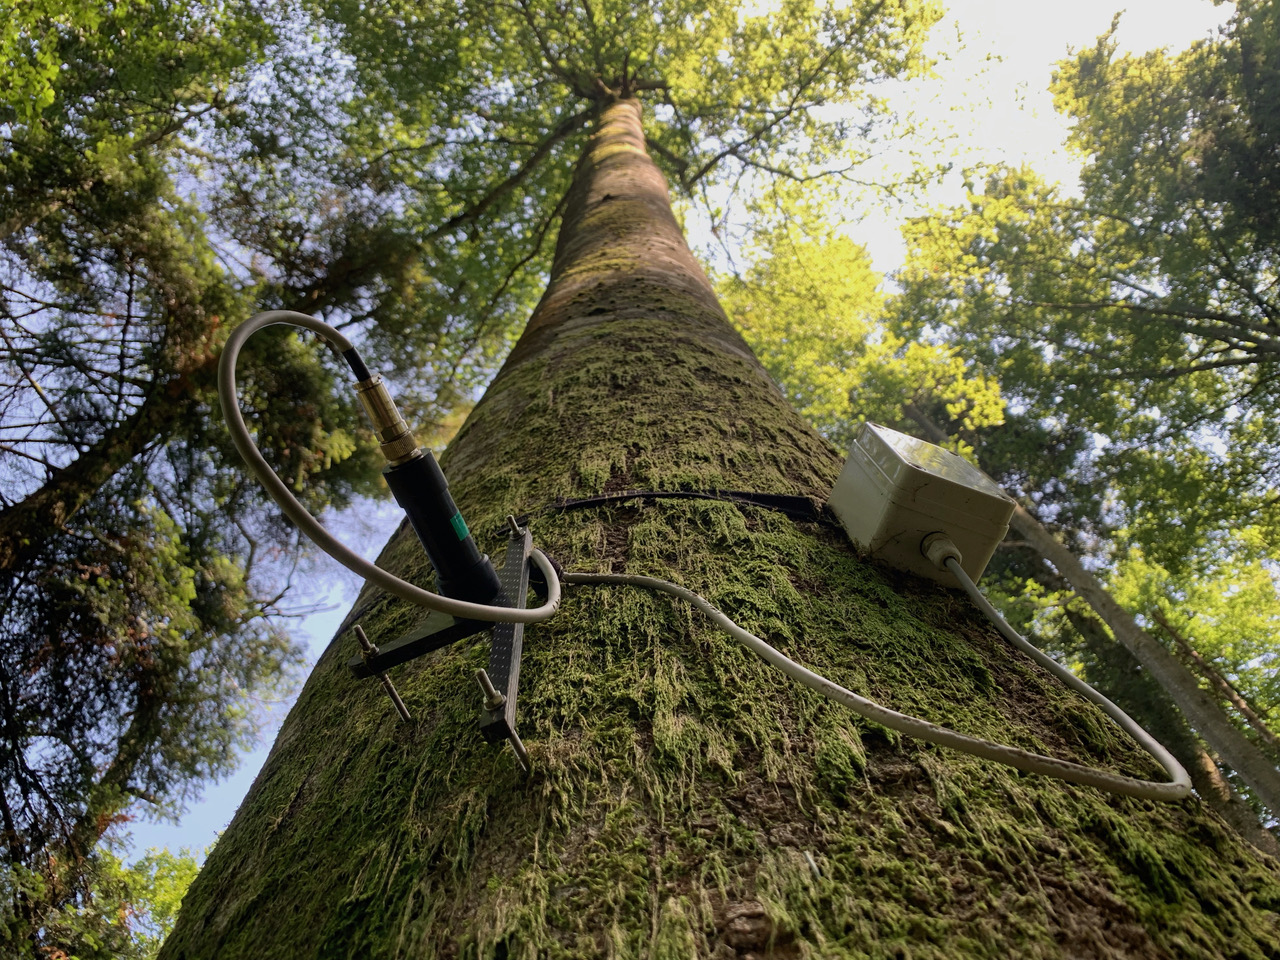 Abb. 1. Punktdendrometer an einem Stamm zur Messung von kontinuierlichen Stammradiusänderungen mit Mikrometerauflösung. Die Daten liefern Informationen zum Wachstum und zum Wasserhaushalt von Bäumen.